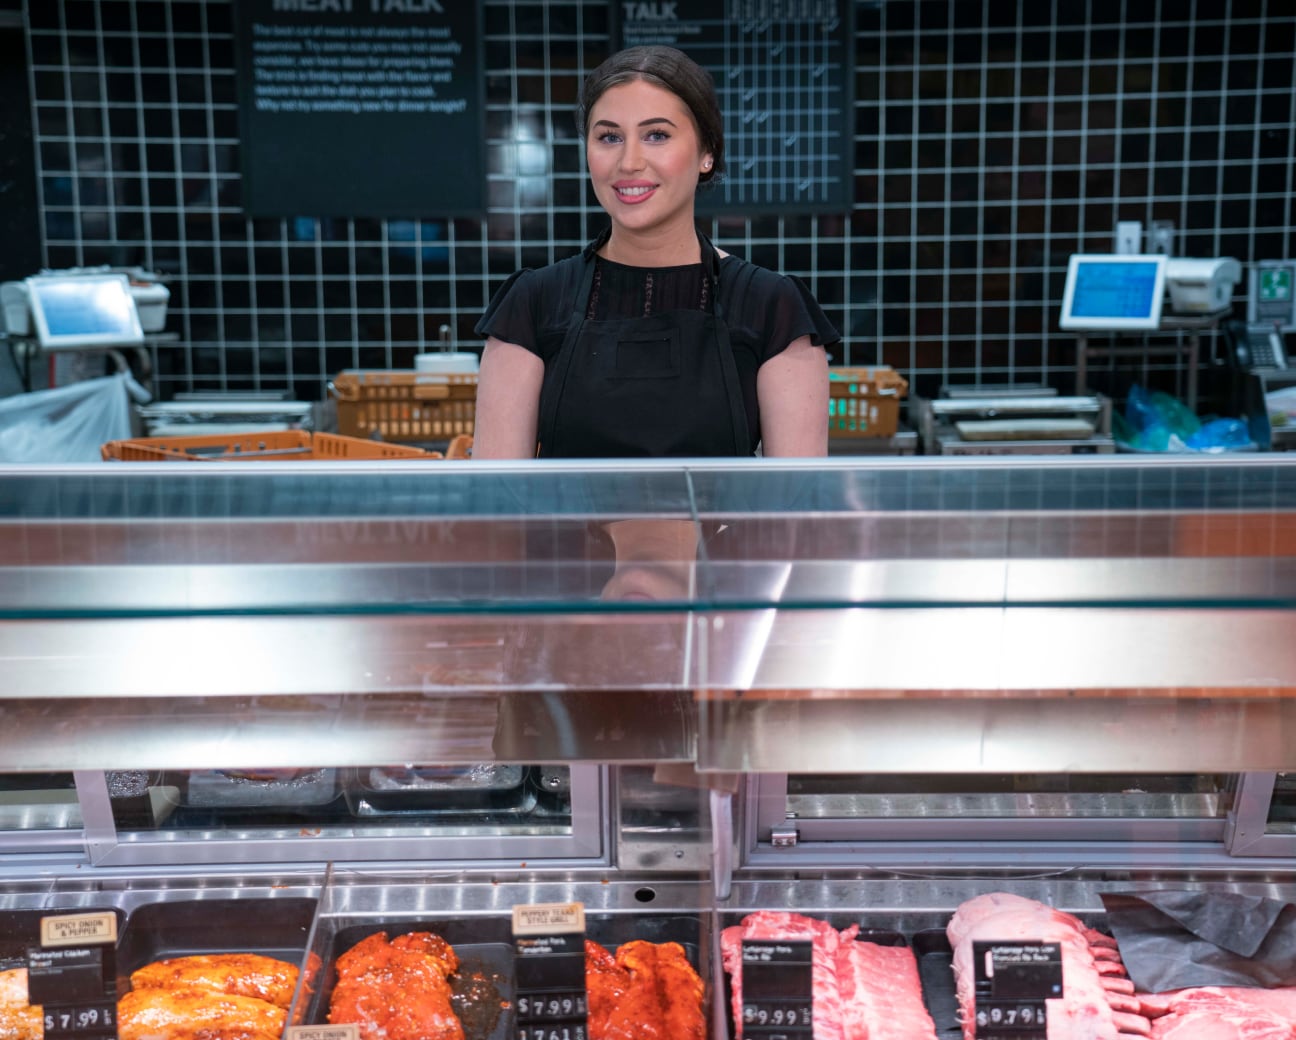 Jeune collègue souriant derrière un comptoir de viande dans une épicerie.